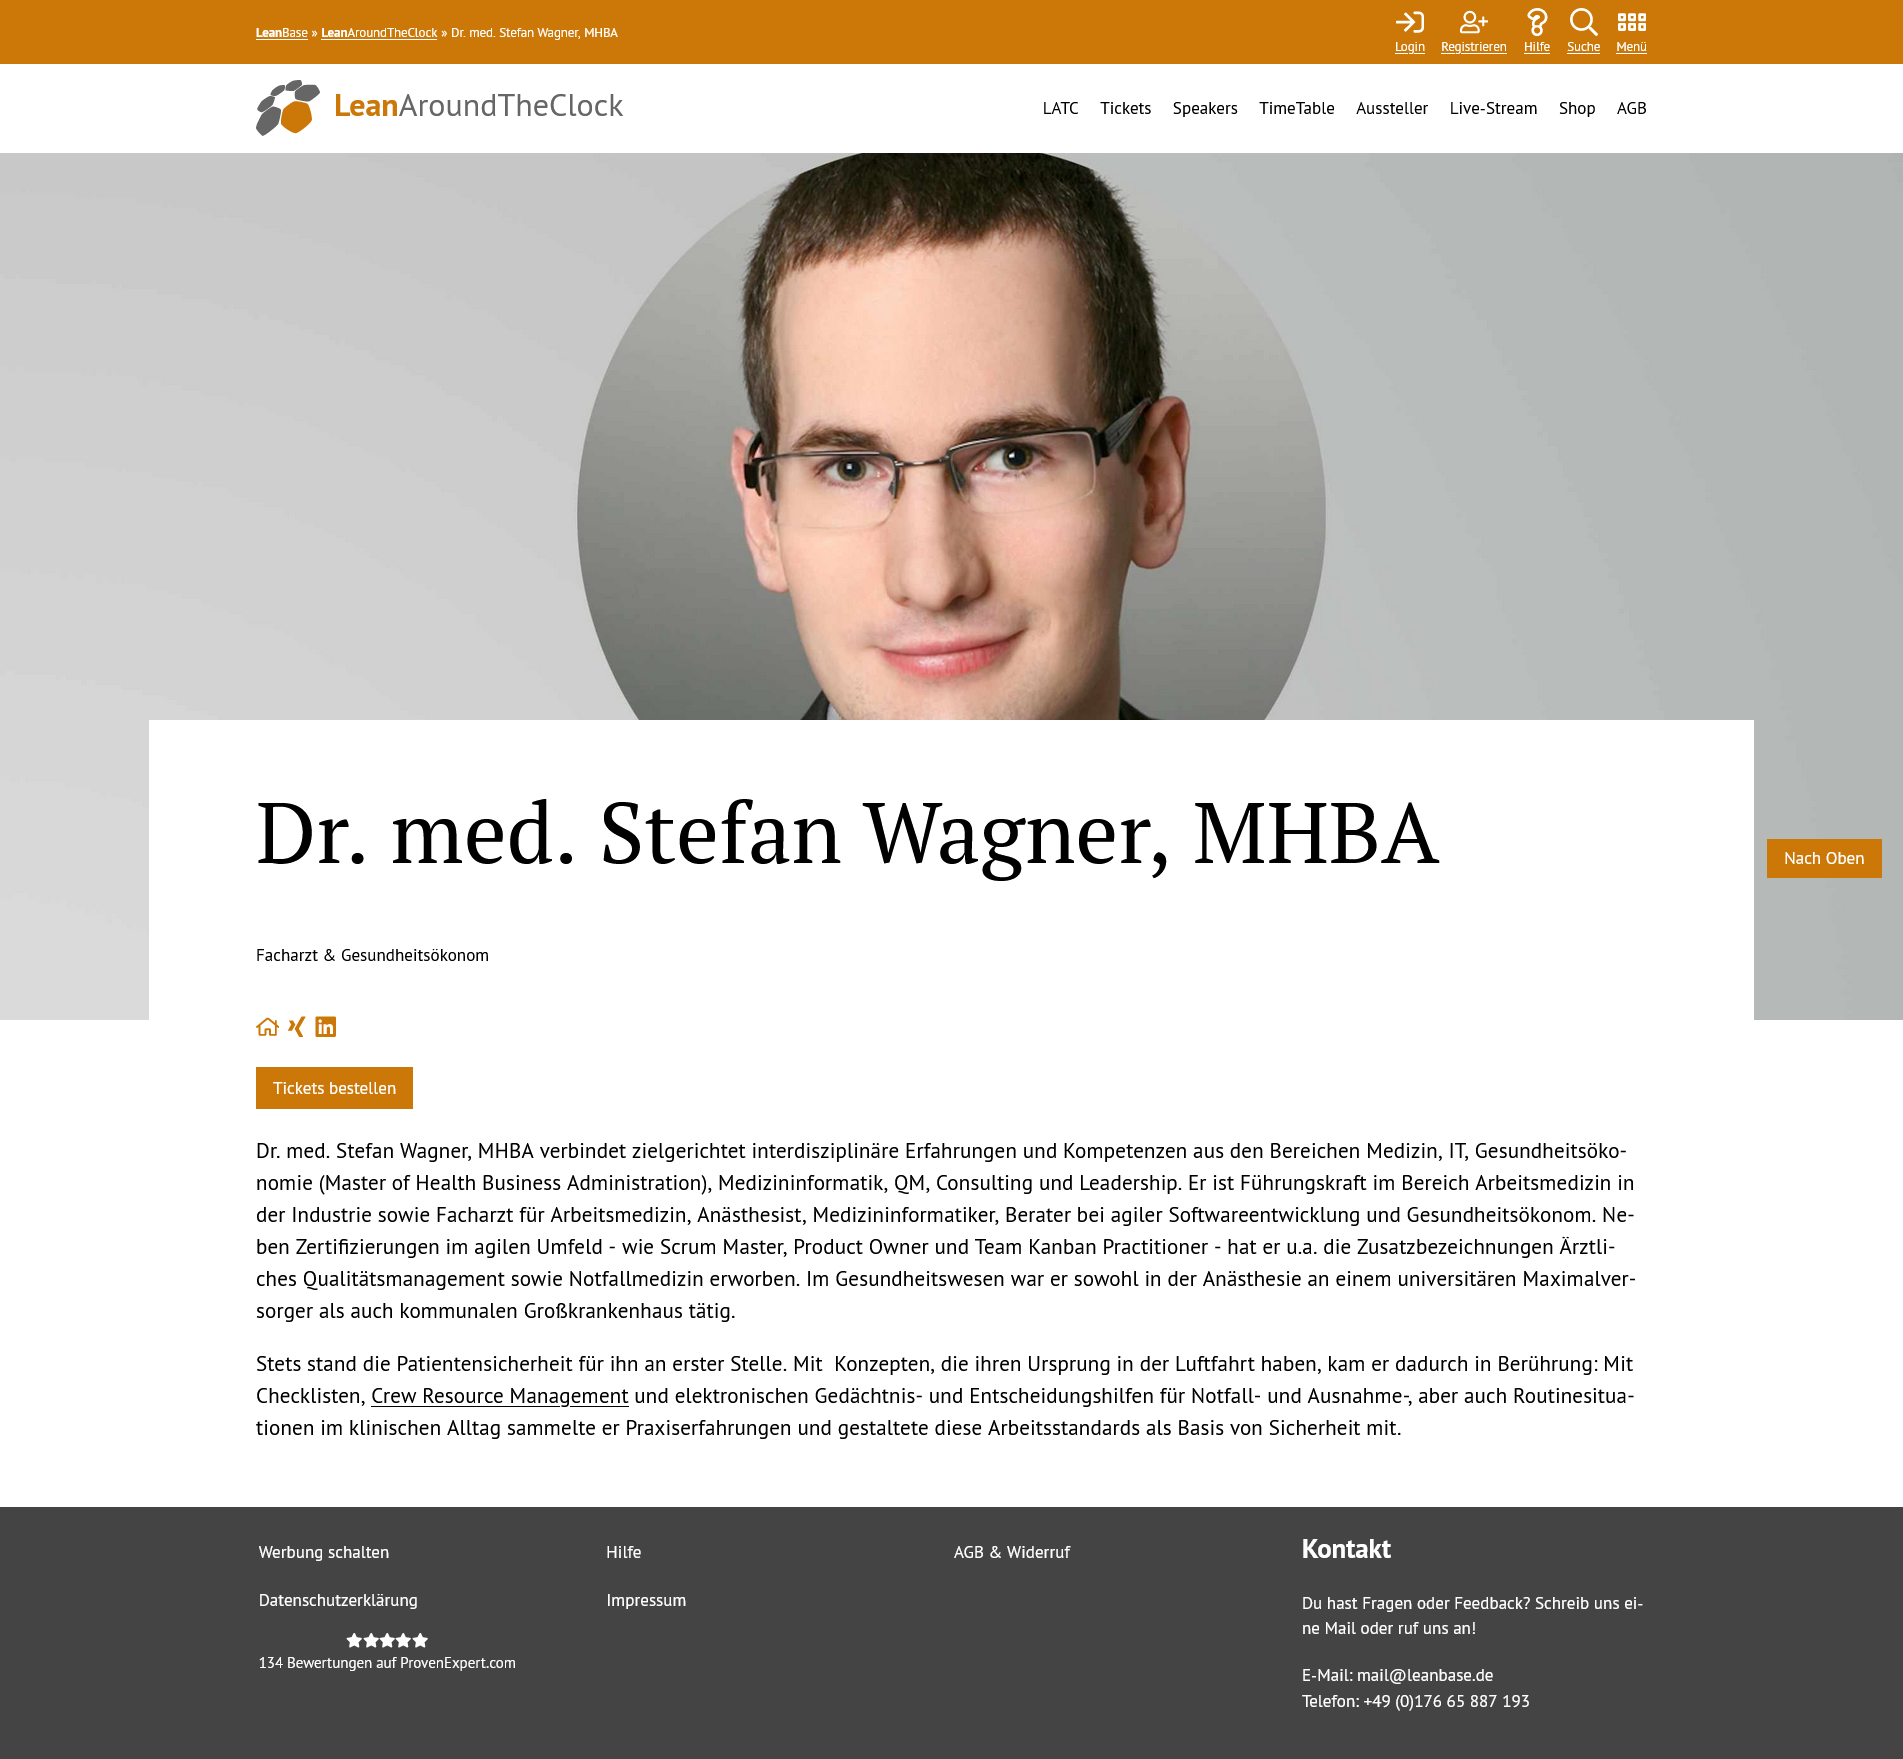 Speaker Dr. med. Stefan Wagner, MHBA